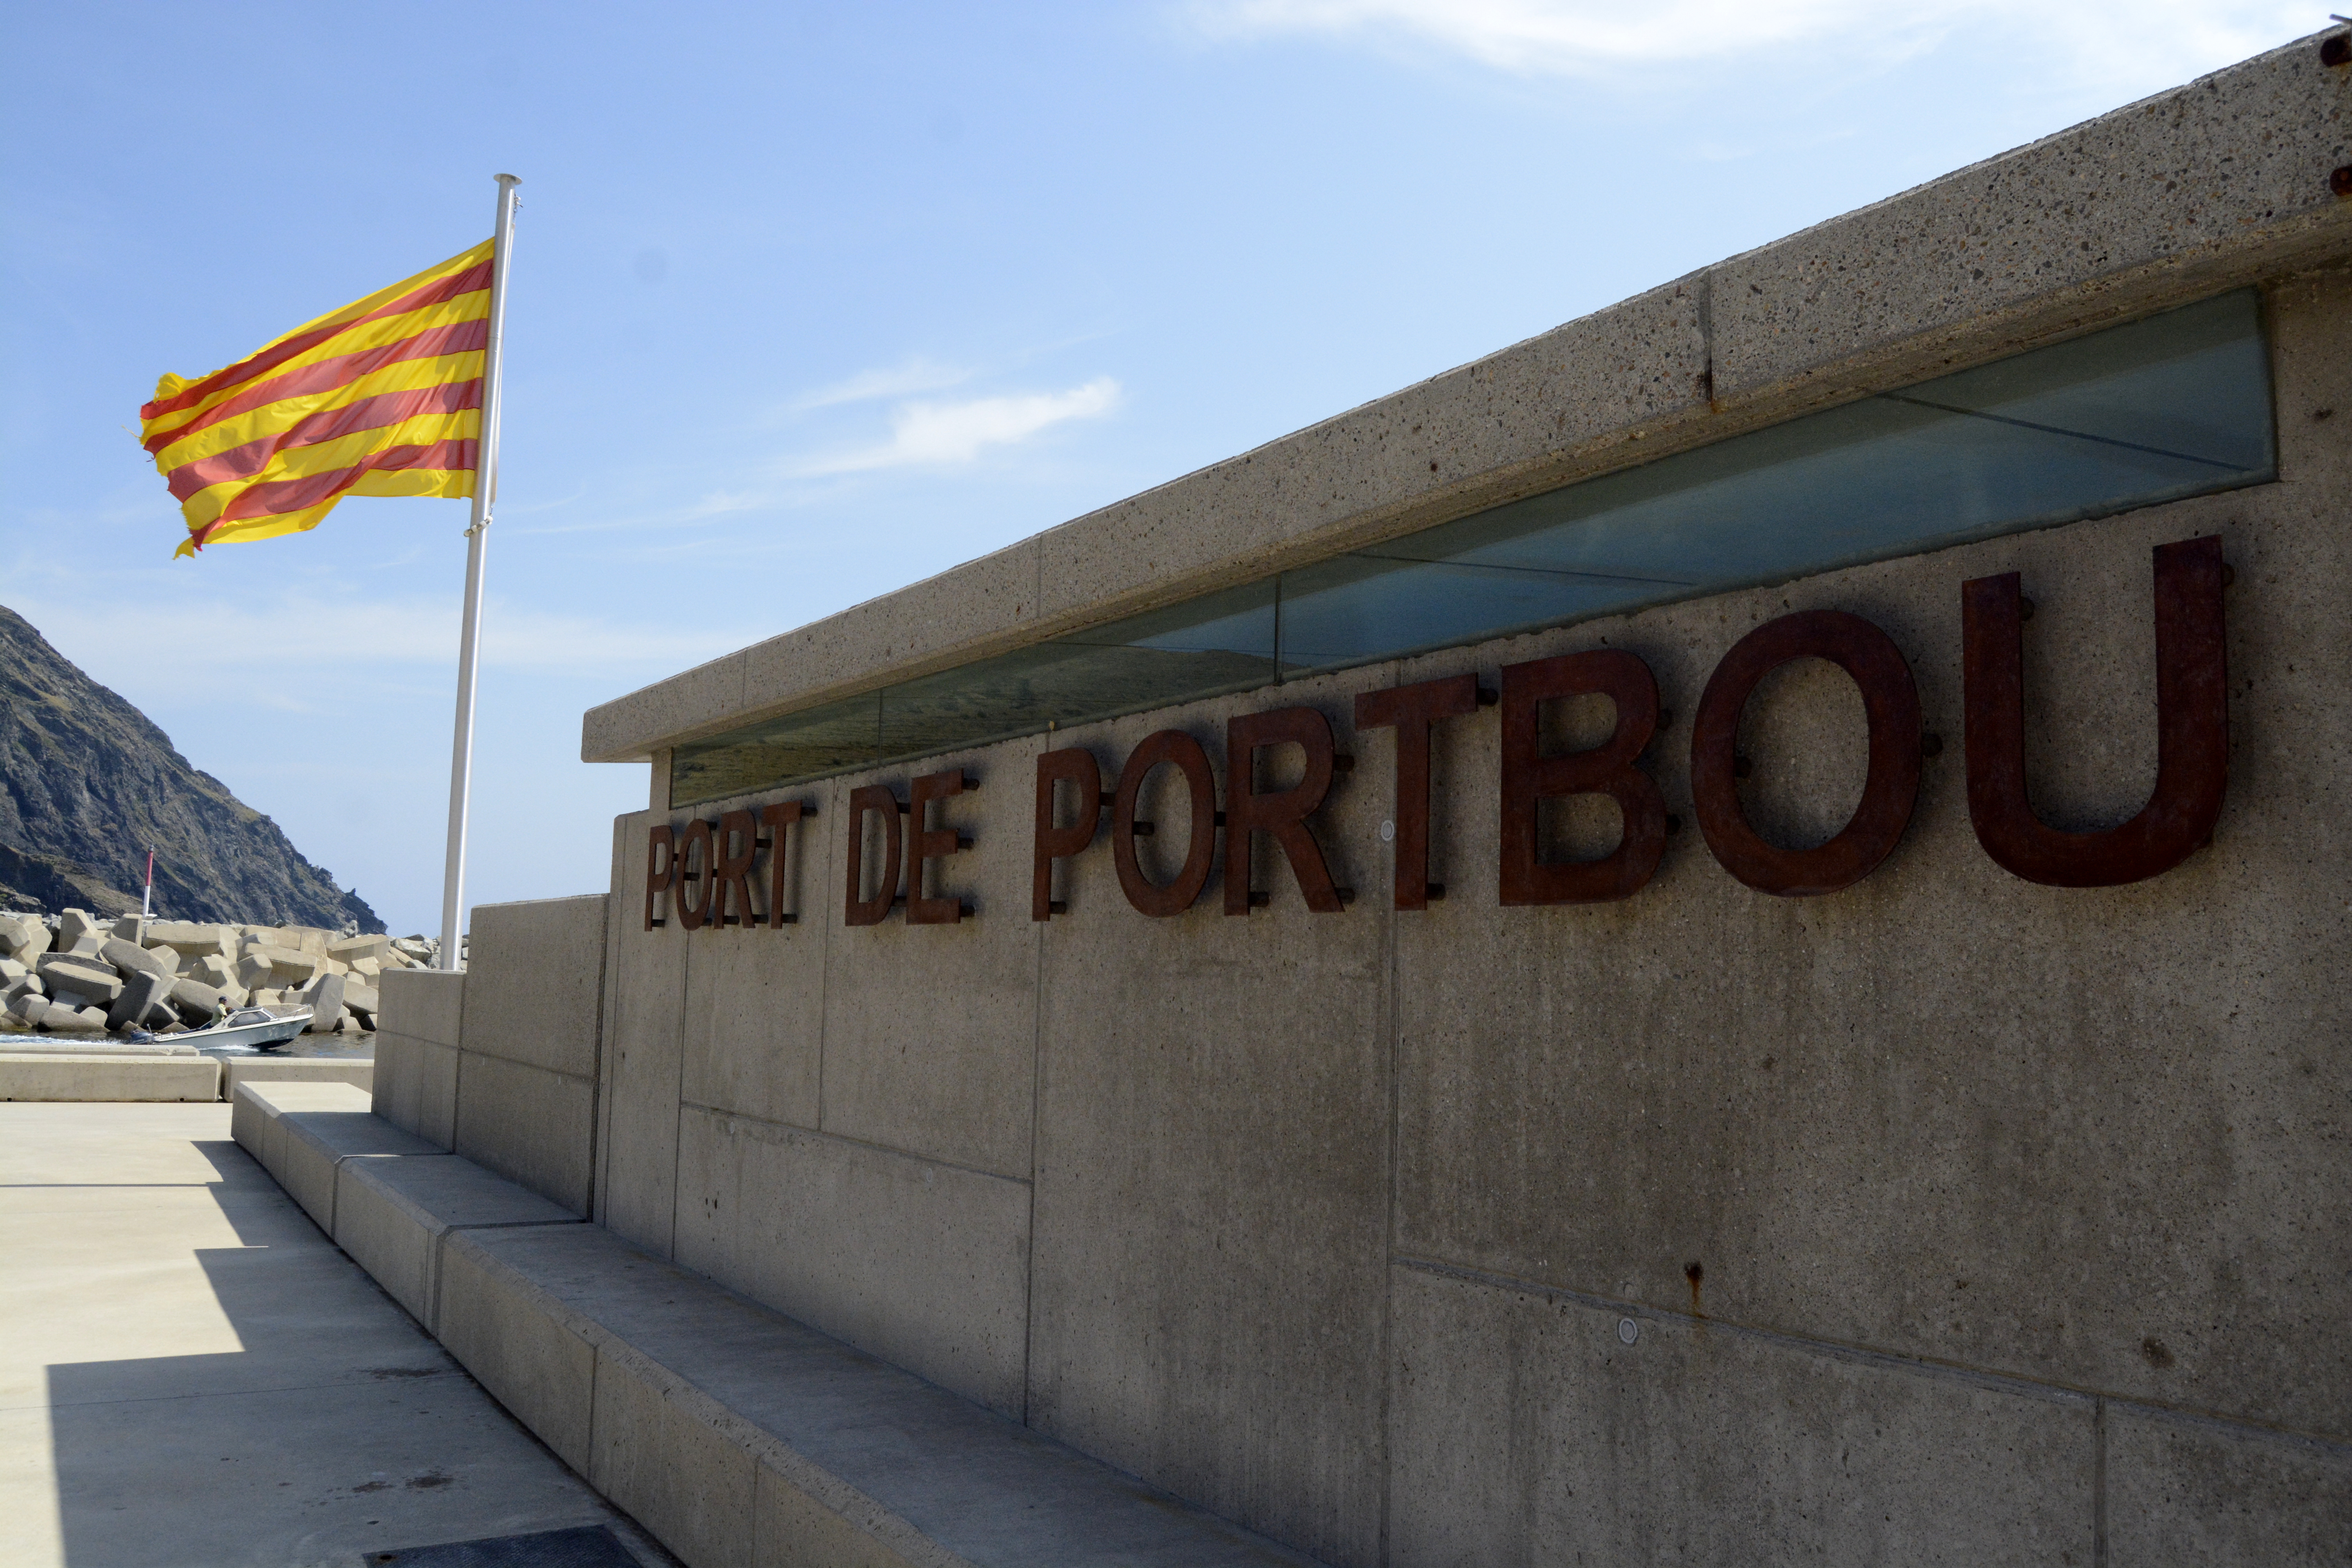 L’entrée du port où flotte le drapeau catalan. Crédit Auriane Guiot